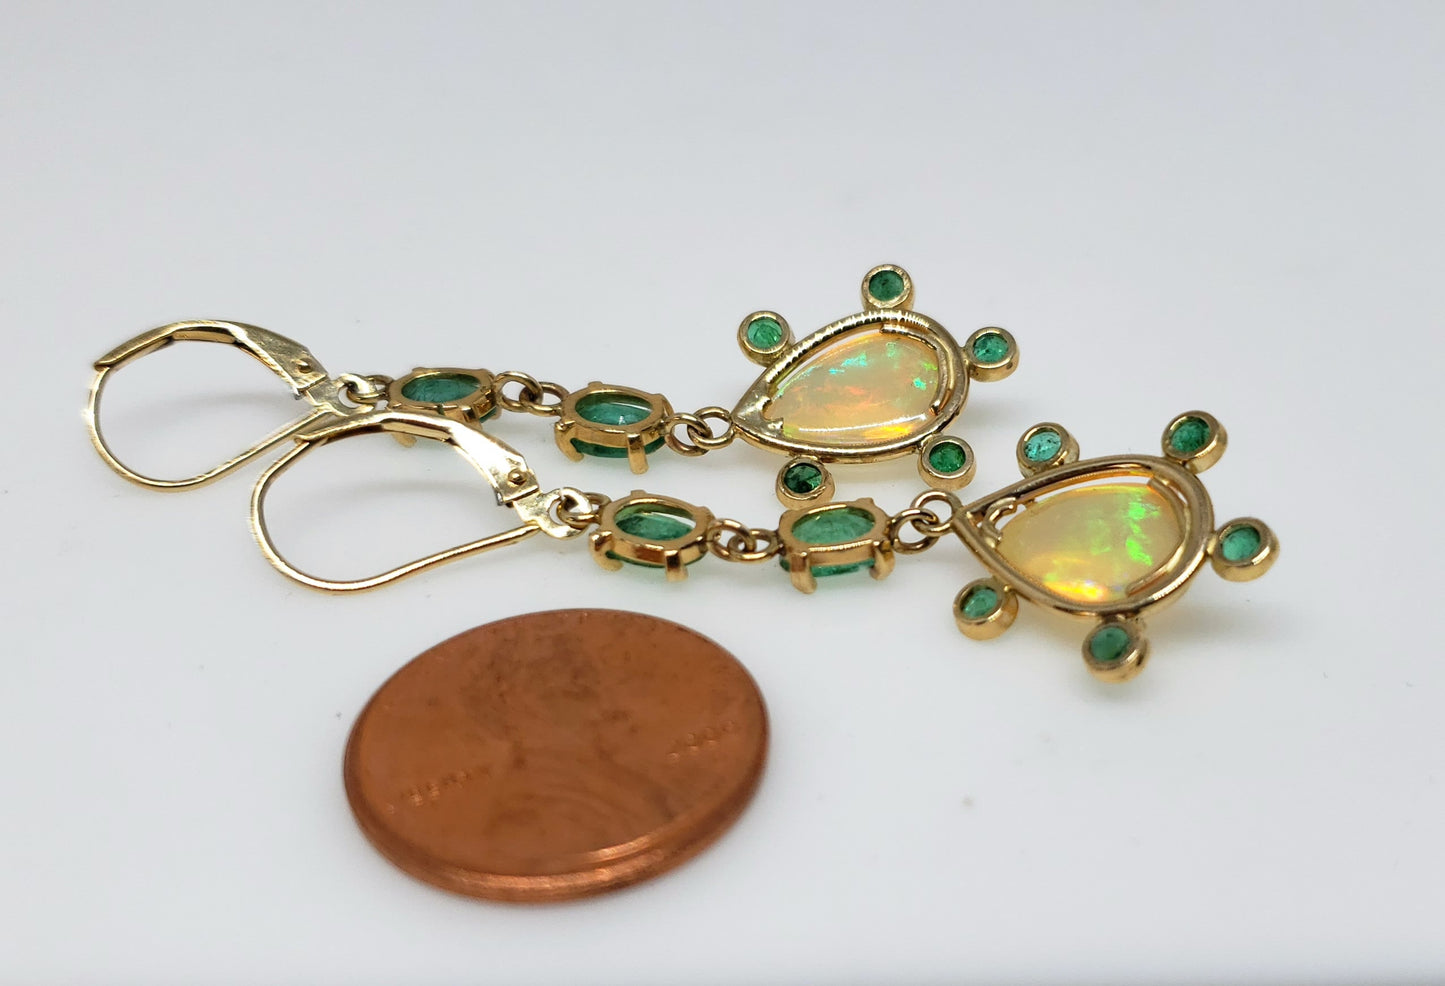 Opal & Emerald Earrings 14k Gold #120